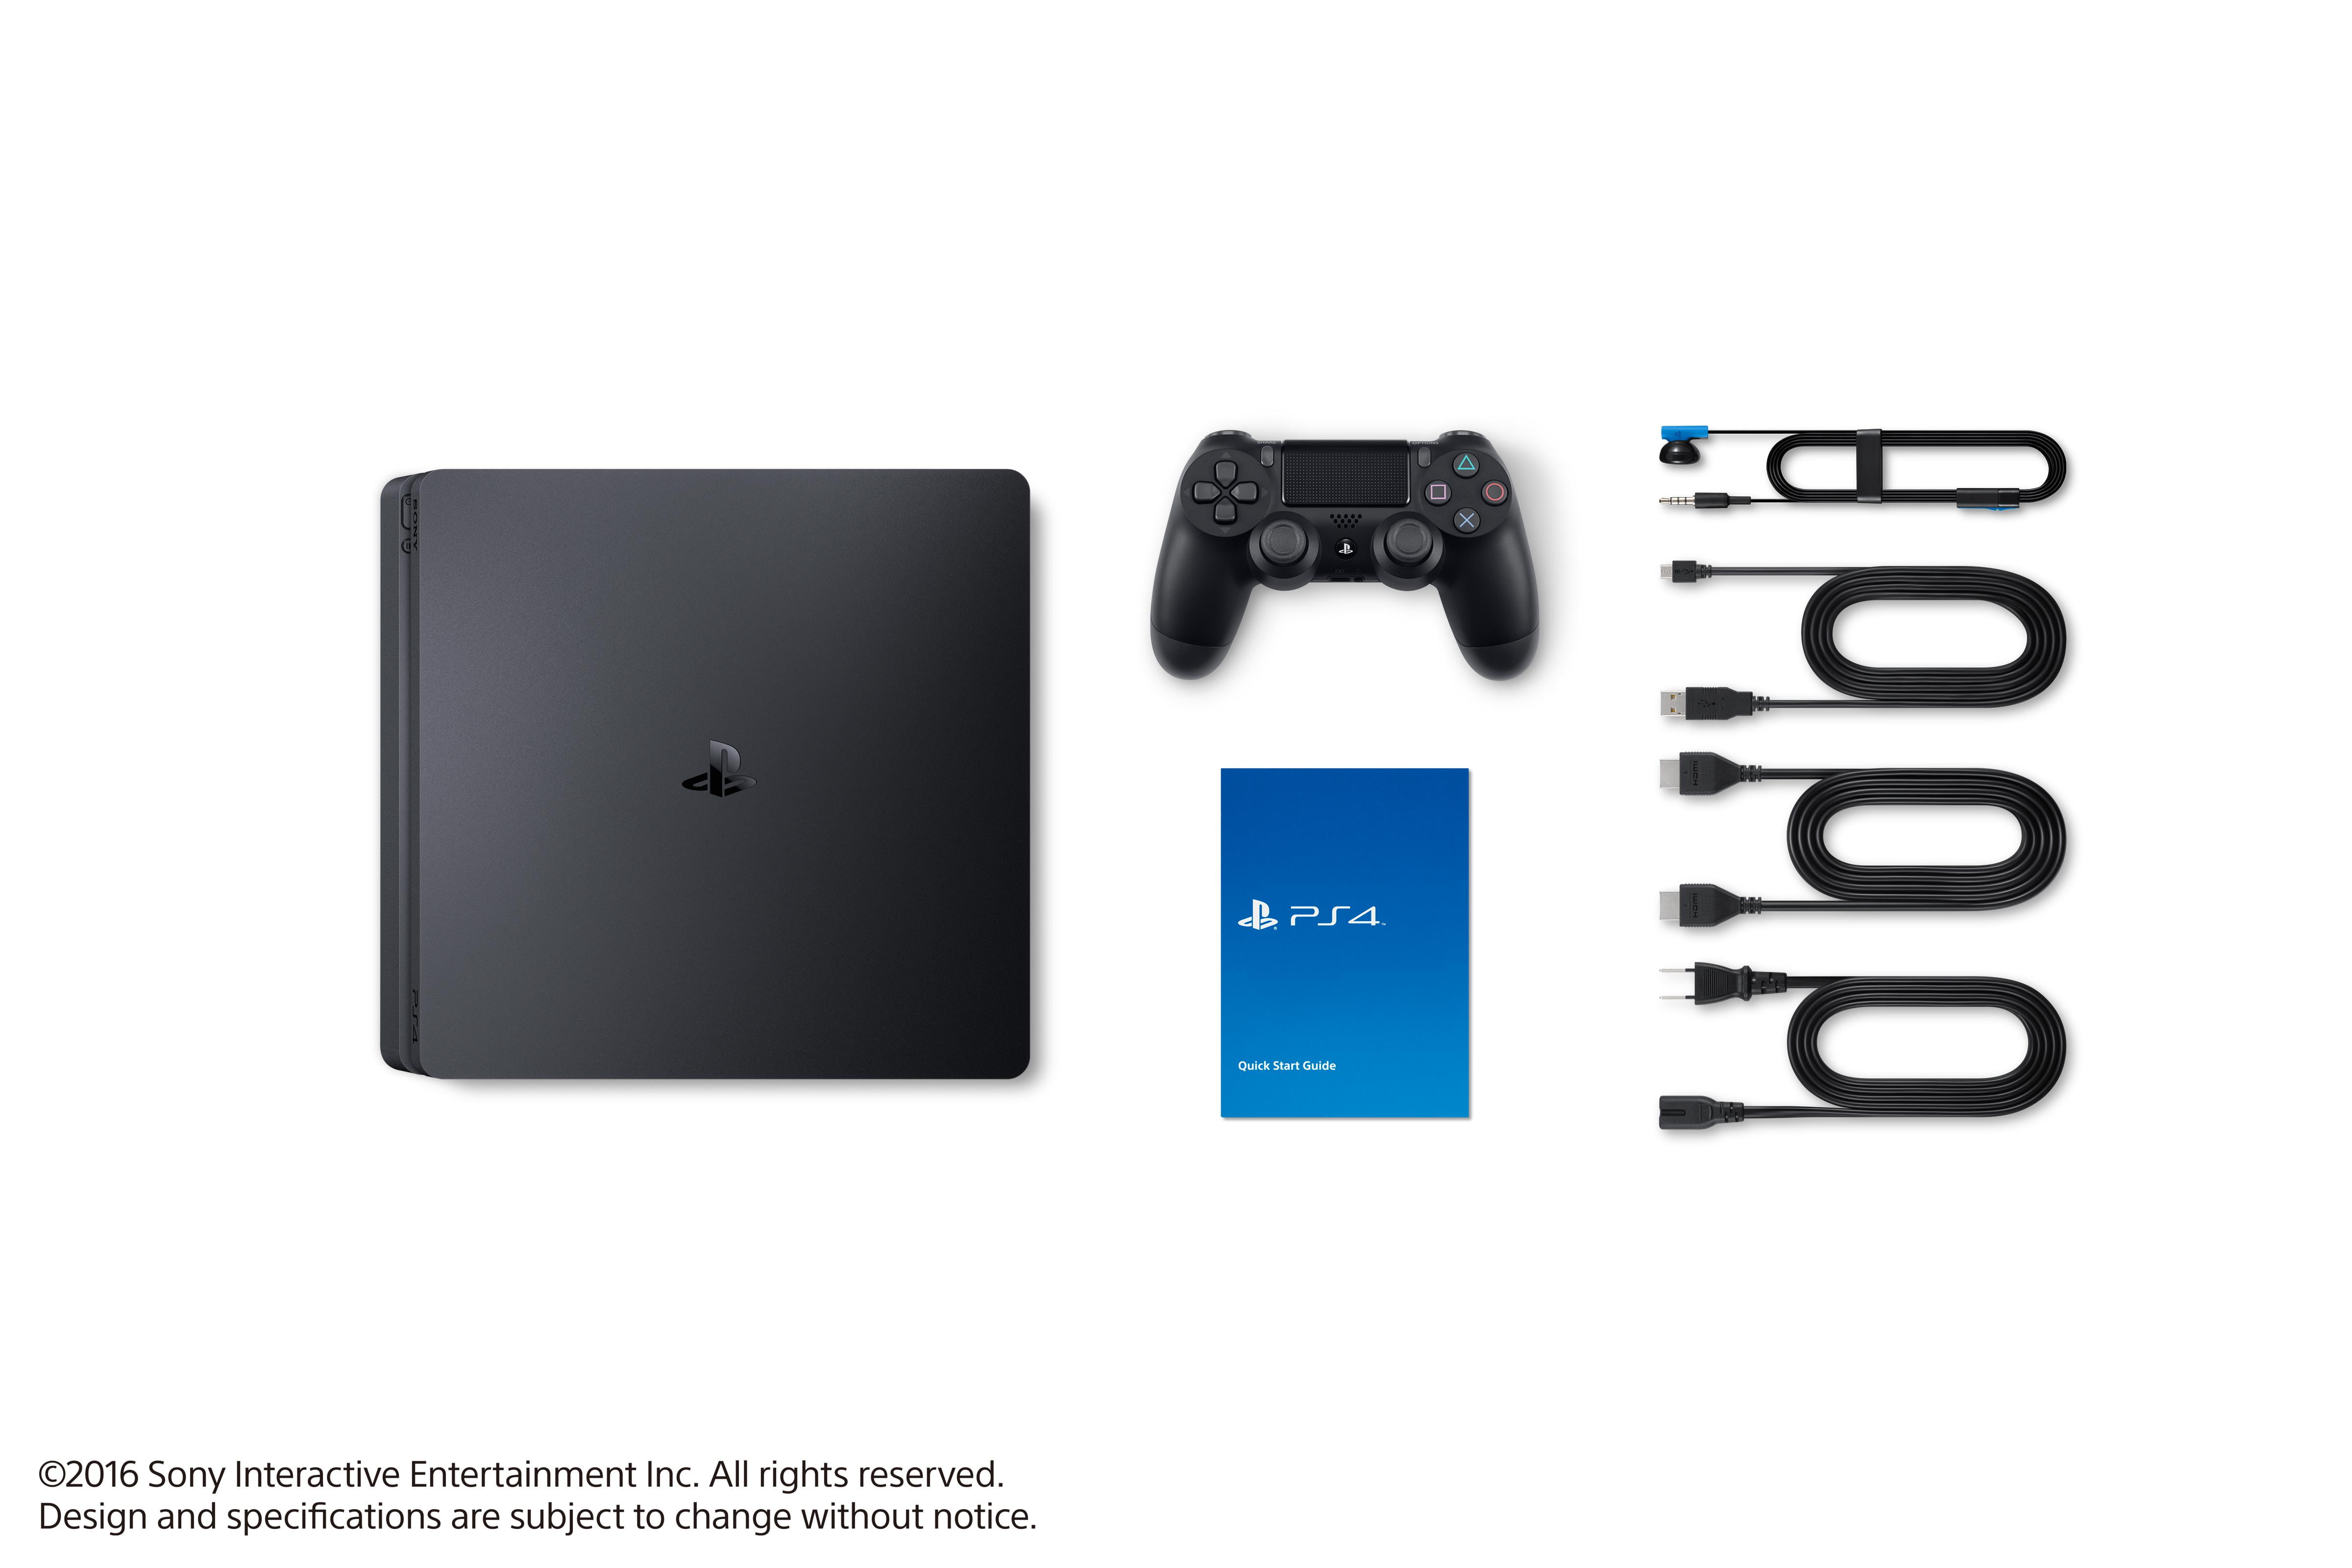 Sony PlayStation 4, 500GB Slim System, Black - Walmart.com